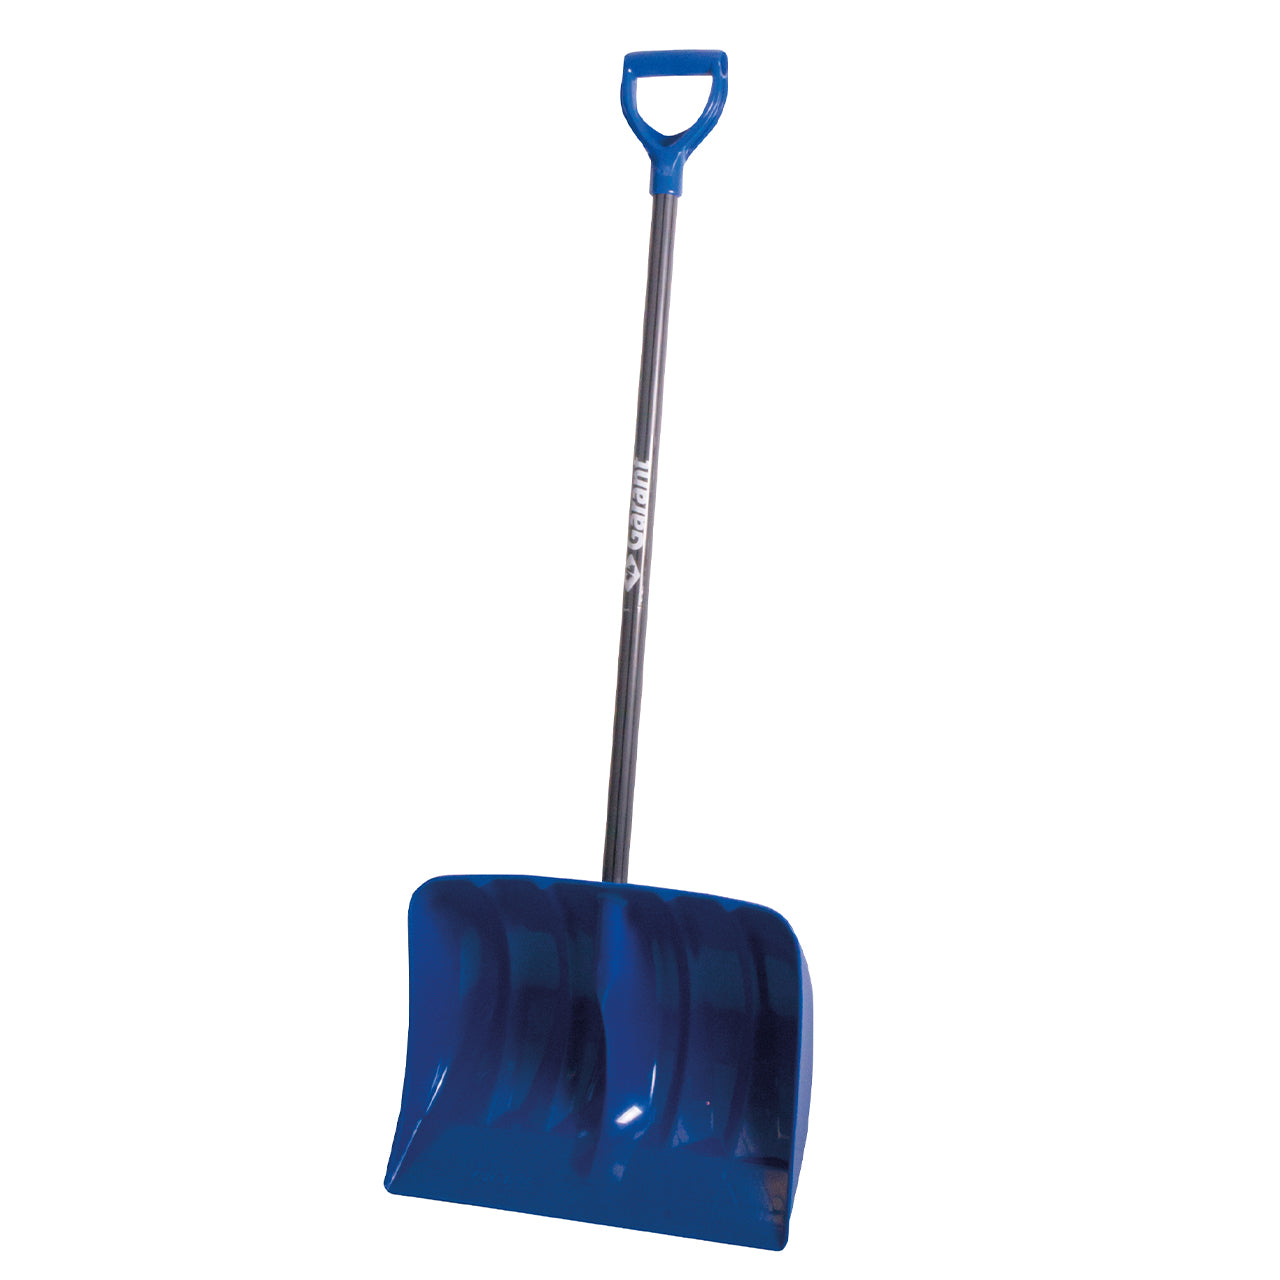 Garant snow shovel